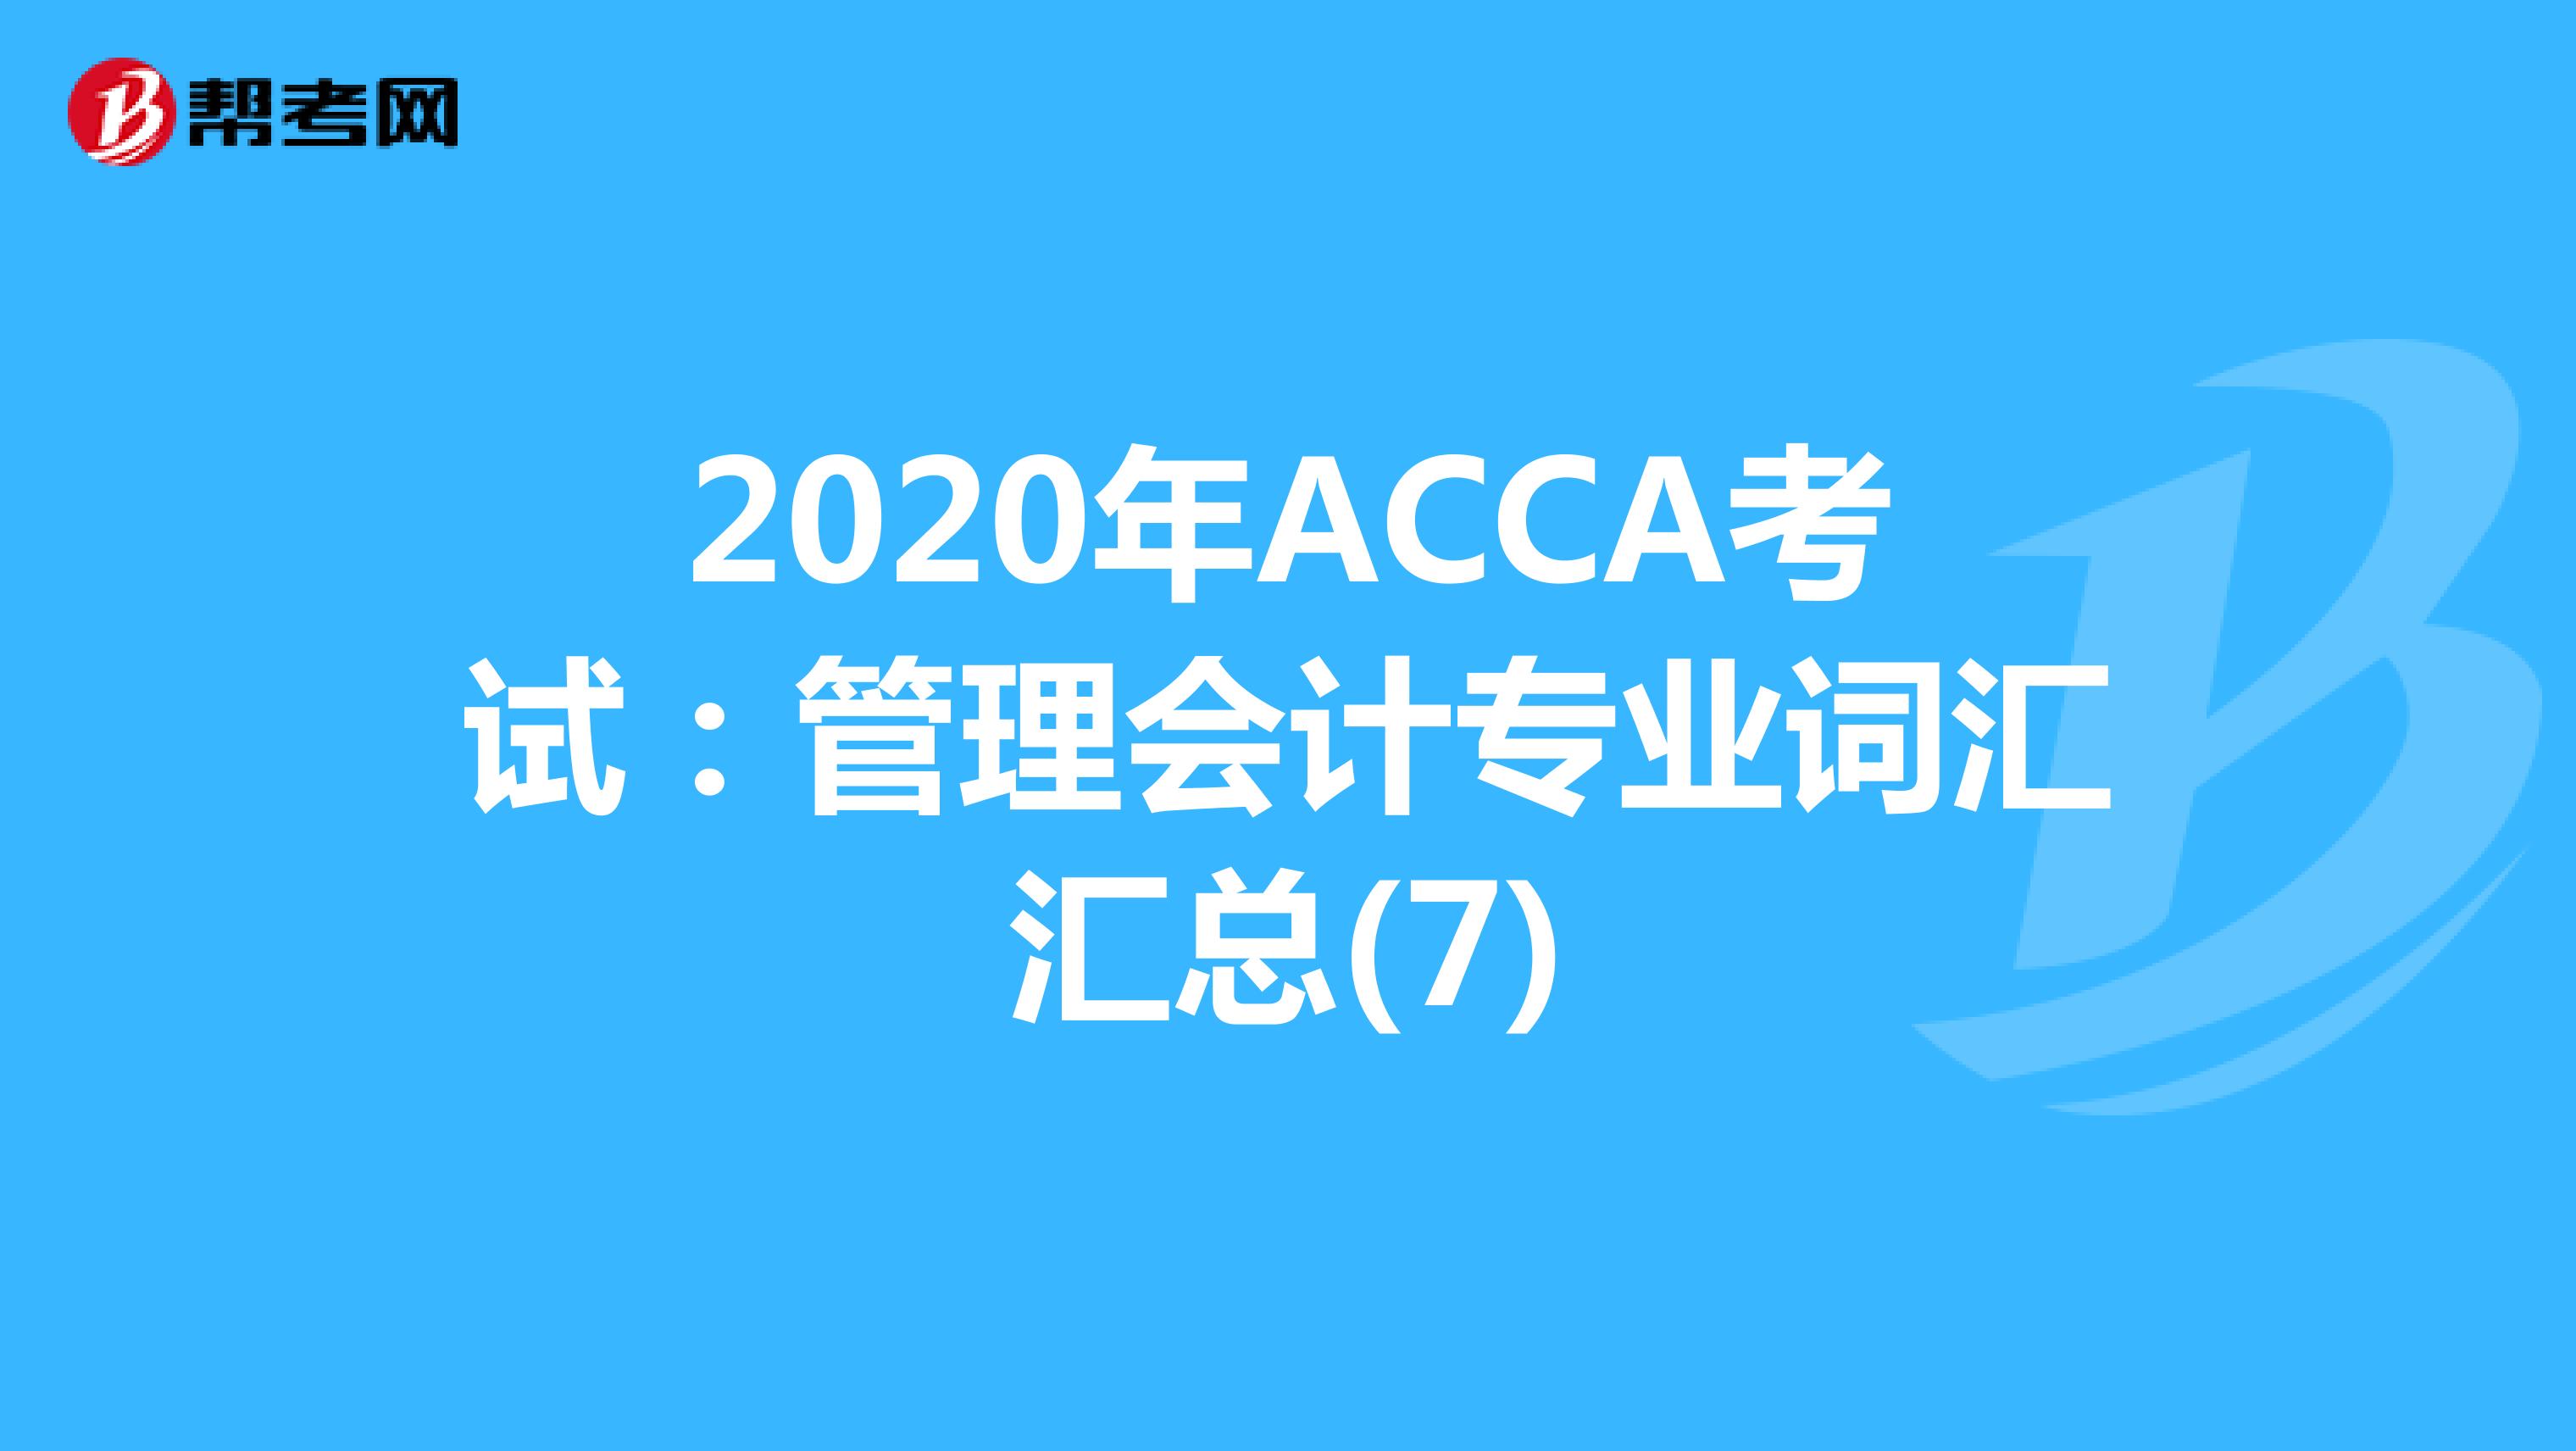 2020年ACCA考试：管理会计专业词汇汇总(7)